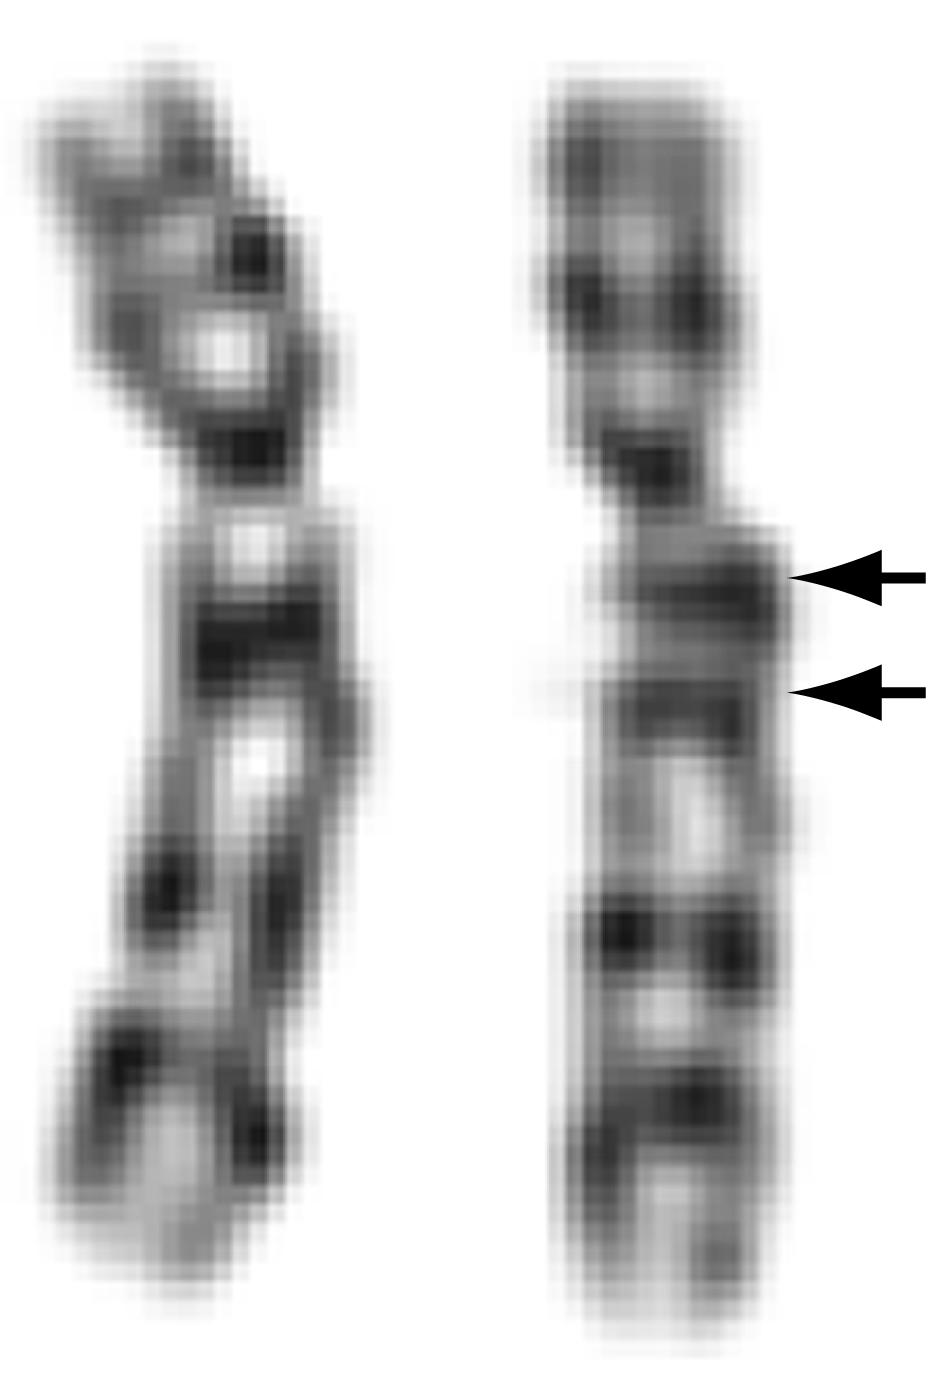 Gene$ska varianter varierar i storlek Normal varia4on Storleksordning (baspar) 10 6 A B 10